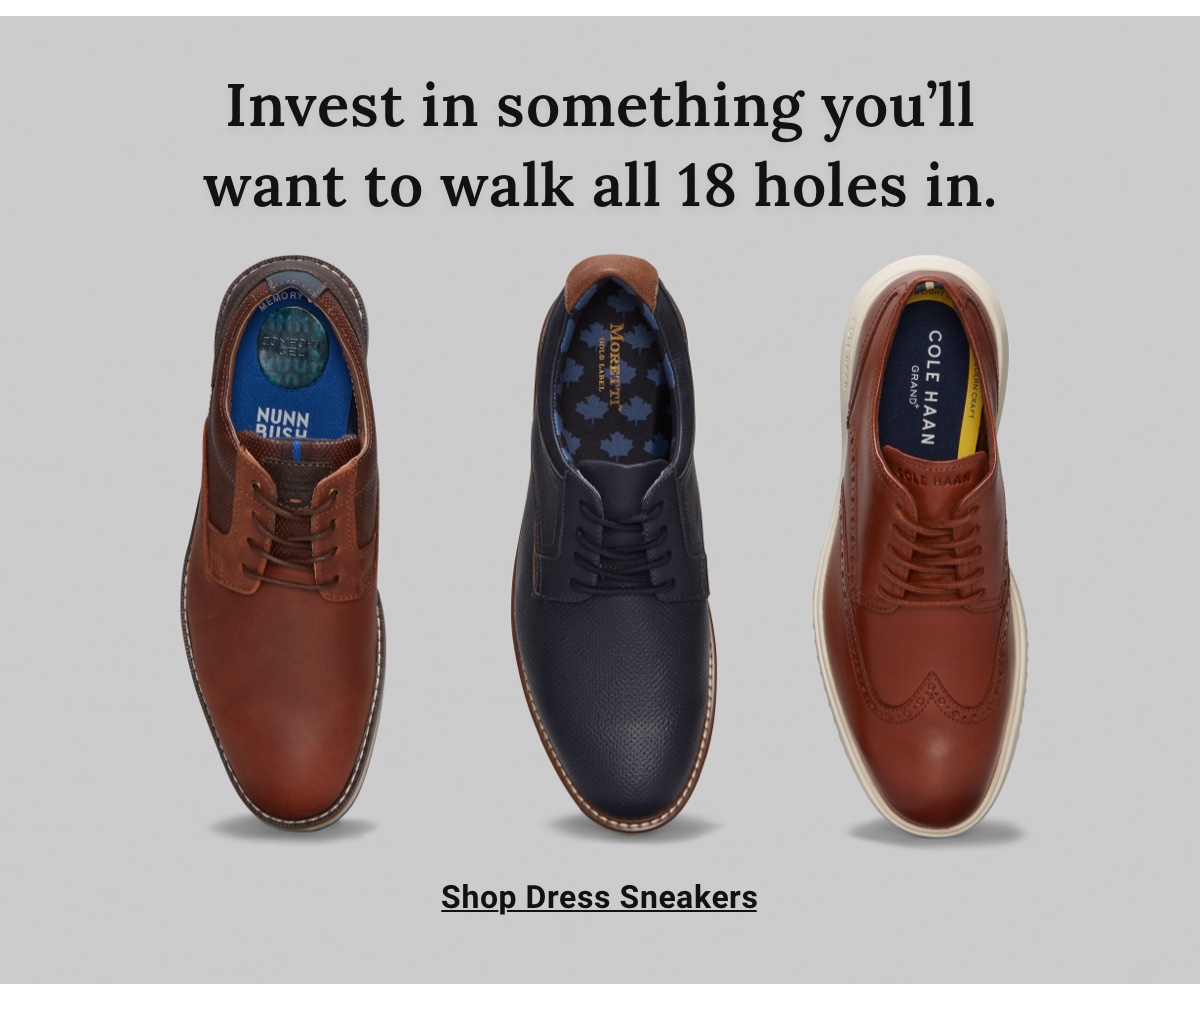 Shop Dress Sneakers